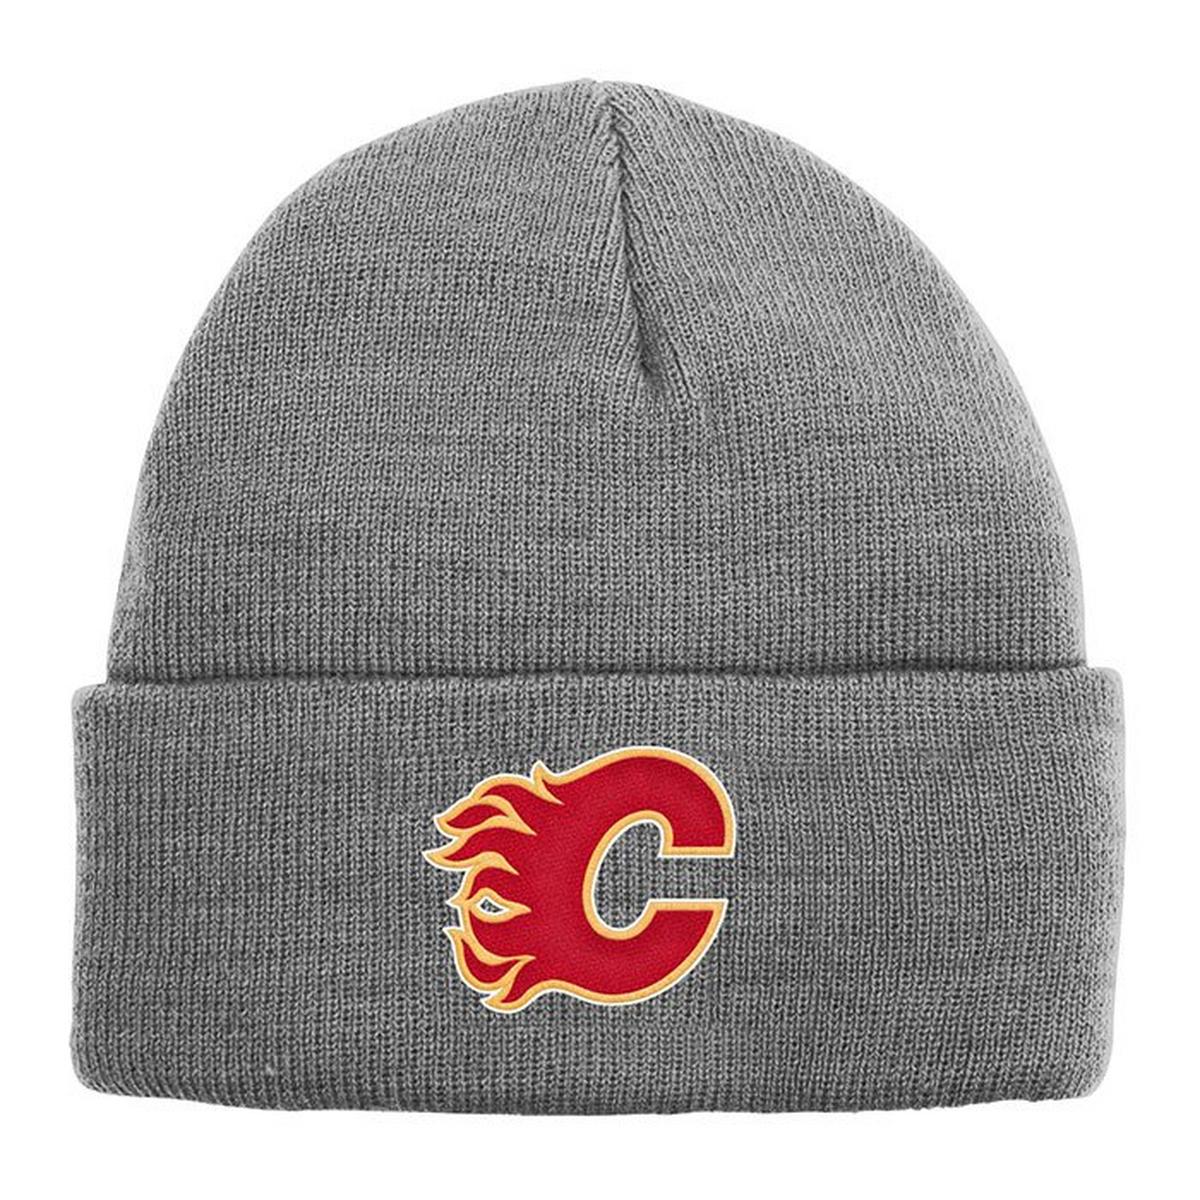 Tuque Calgary Flames en tricot chiné pour enfants [4-7]